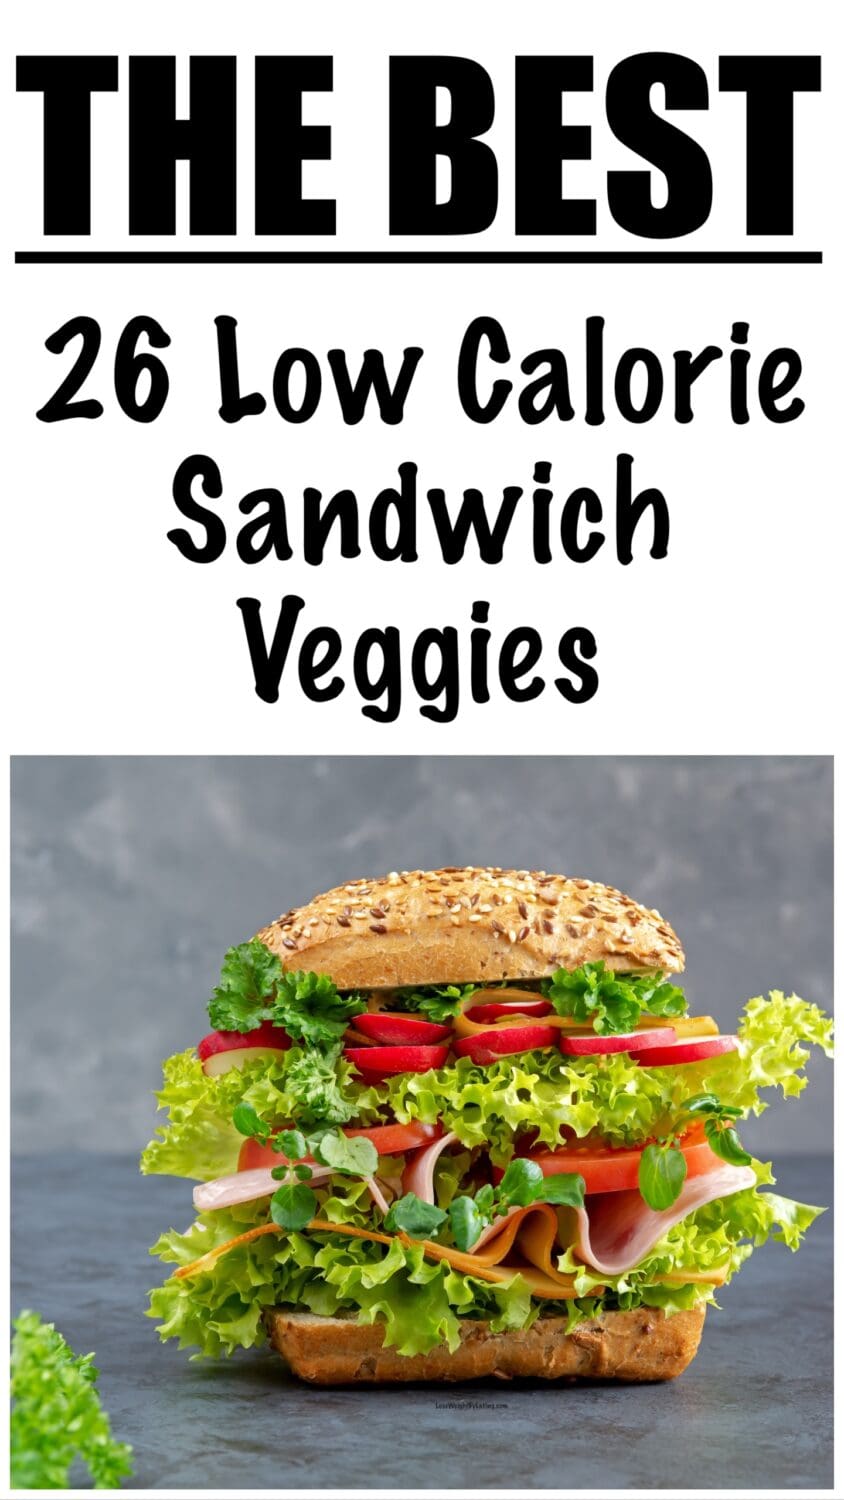 Low Calorie Sandwich Veggies